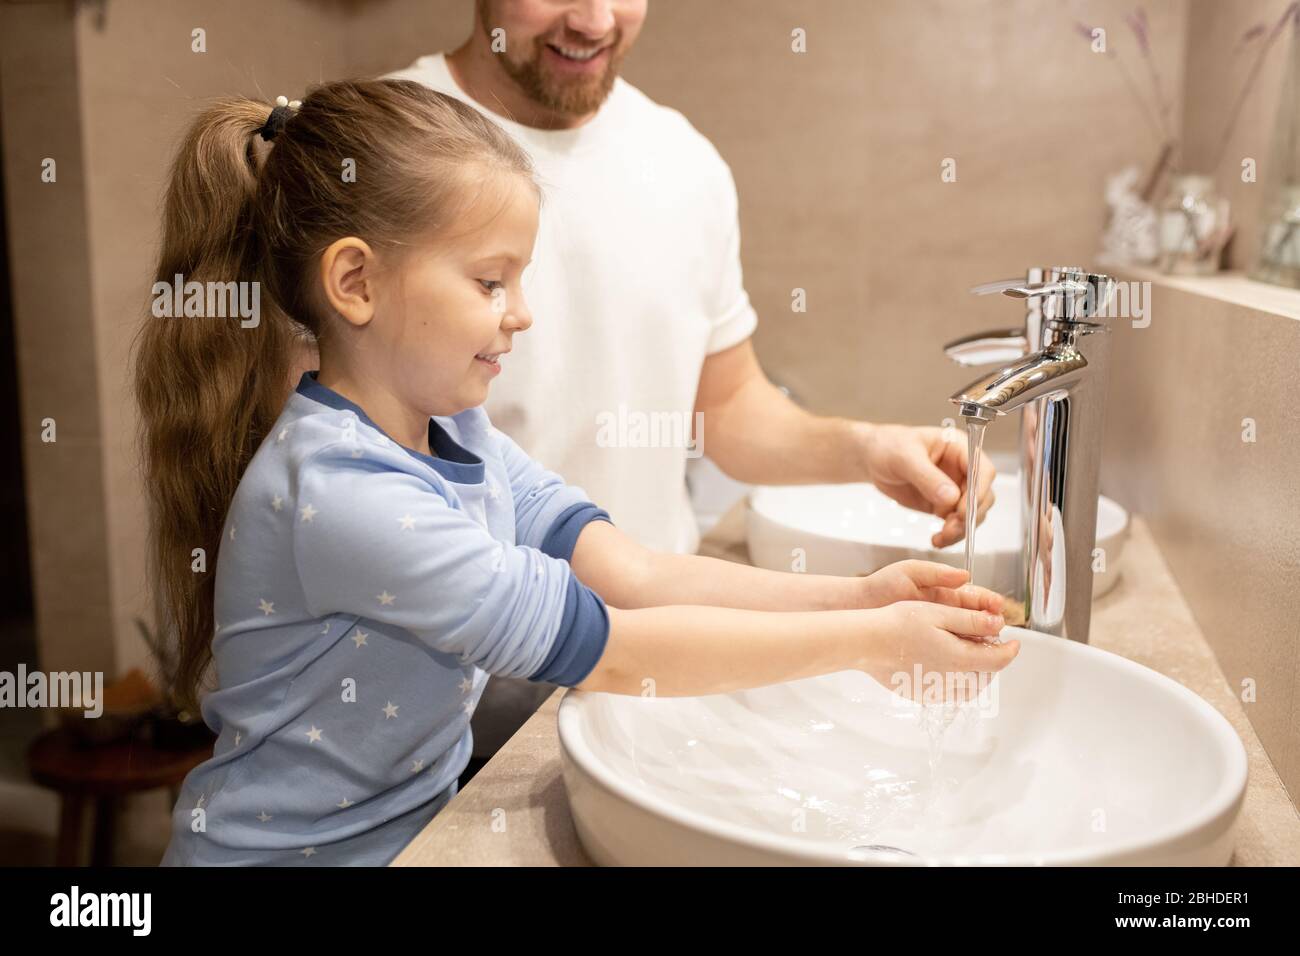 Bonne fille en pyjama bleu se lavant les mains sur l'évier le matin sur fond de son père debout près de dans la salle de bains Banque D'Images